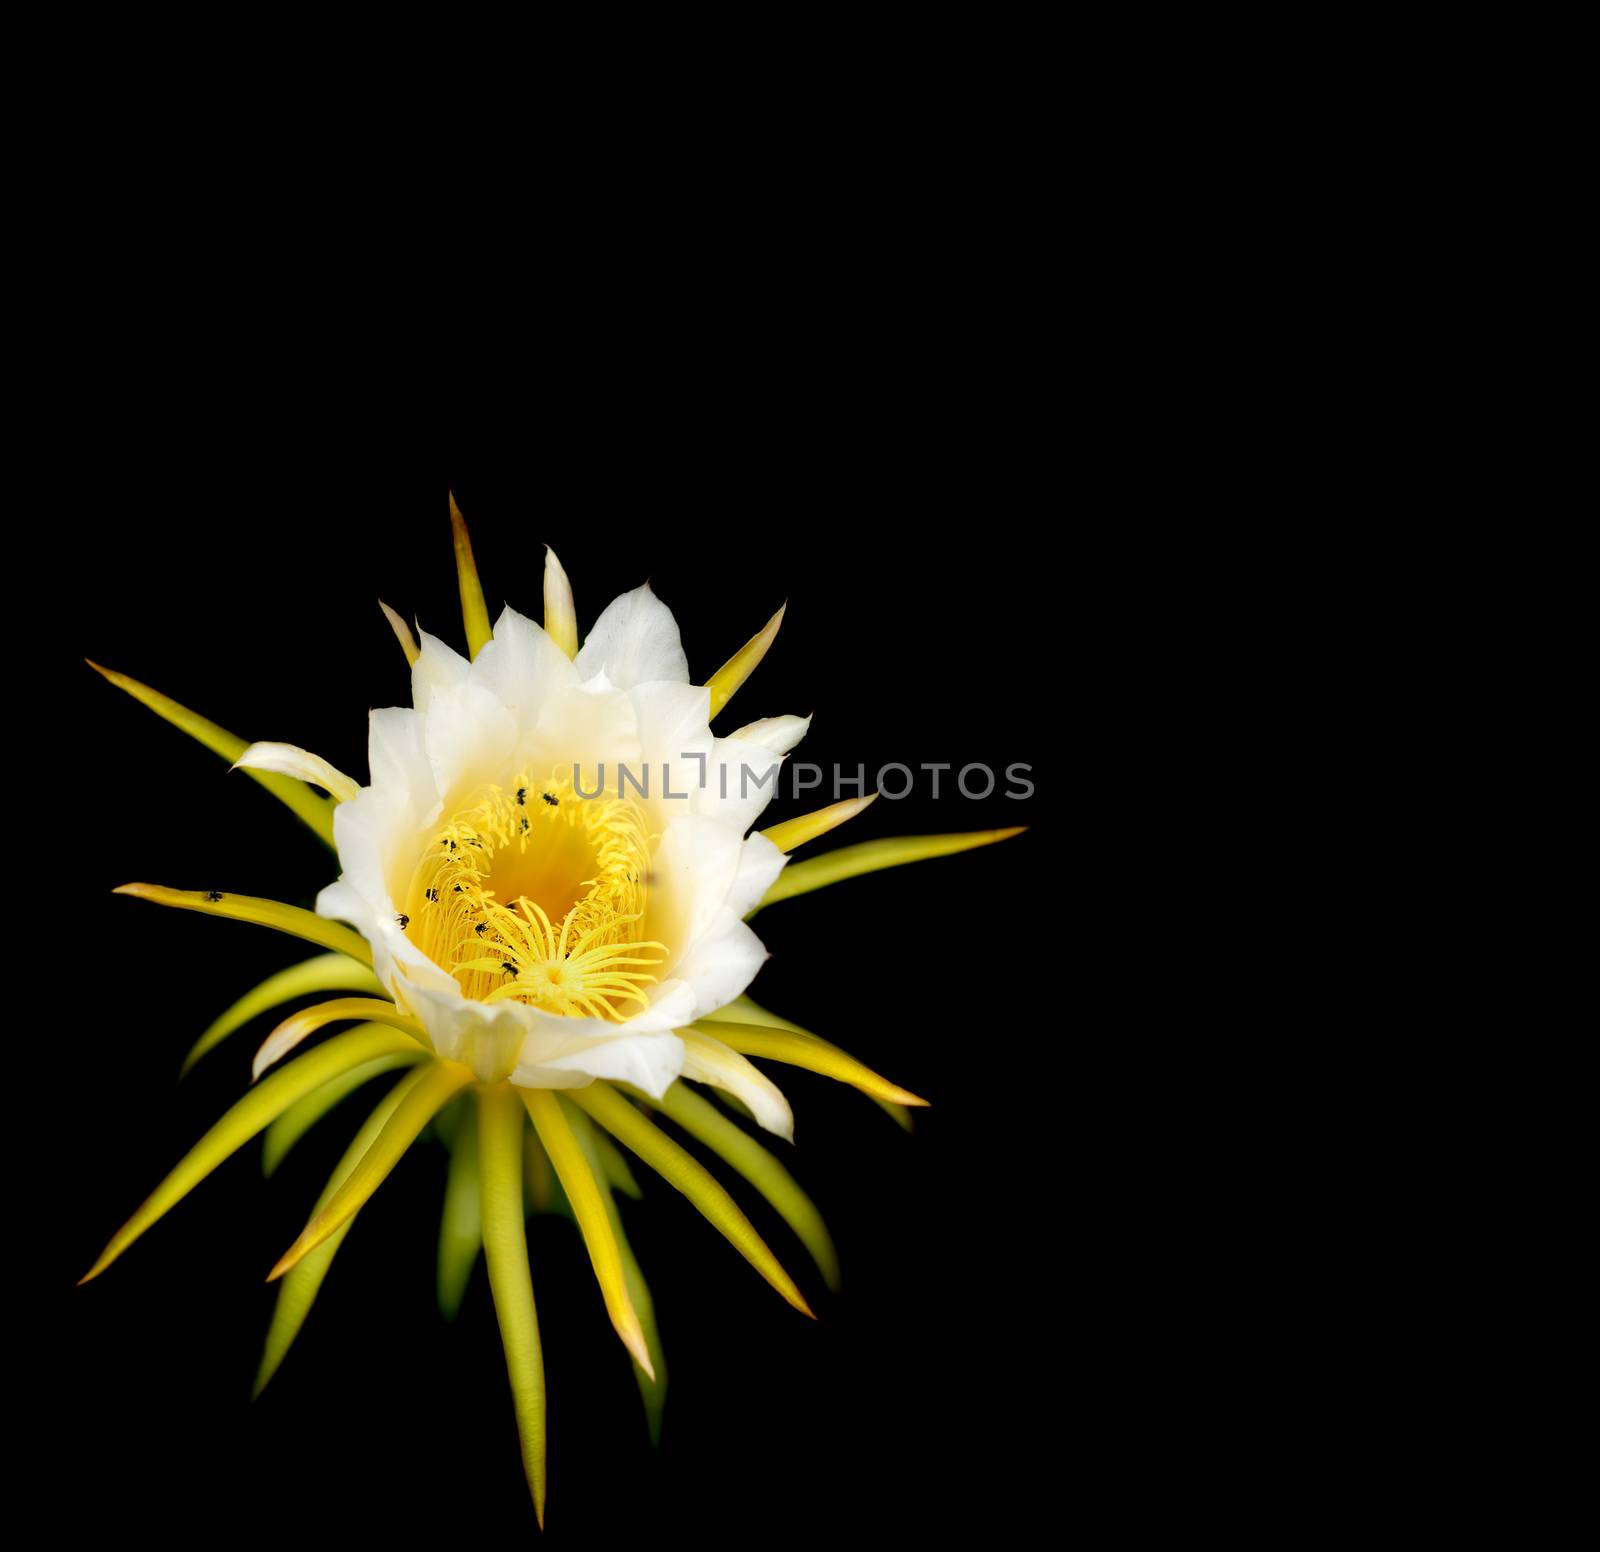 White flower of Dragonfruit over black background